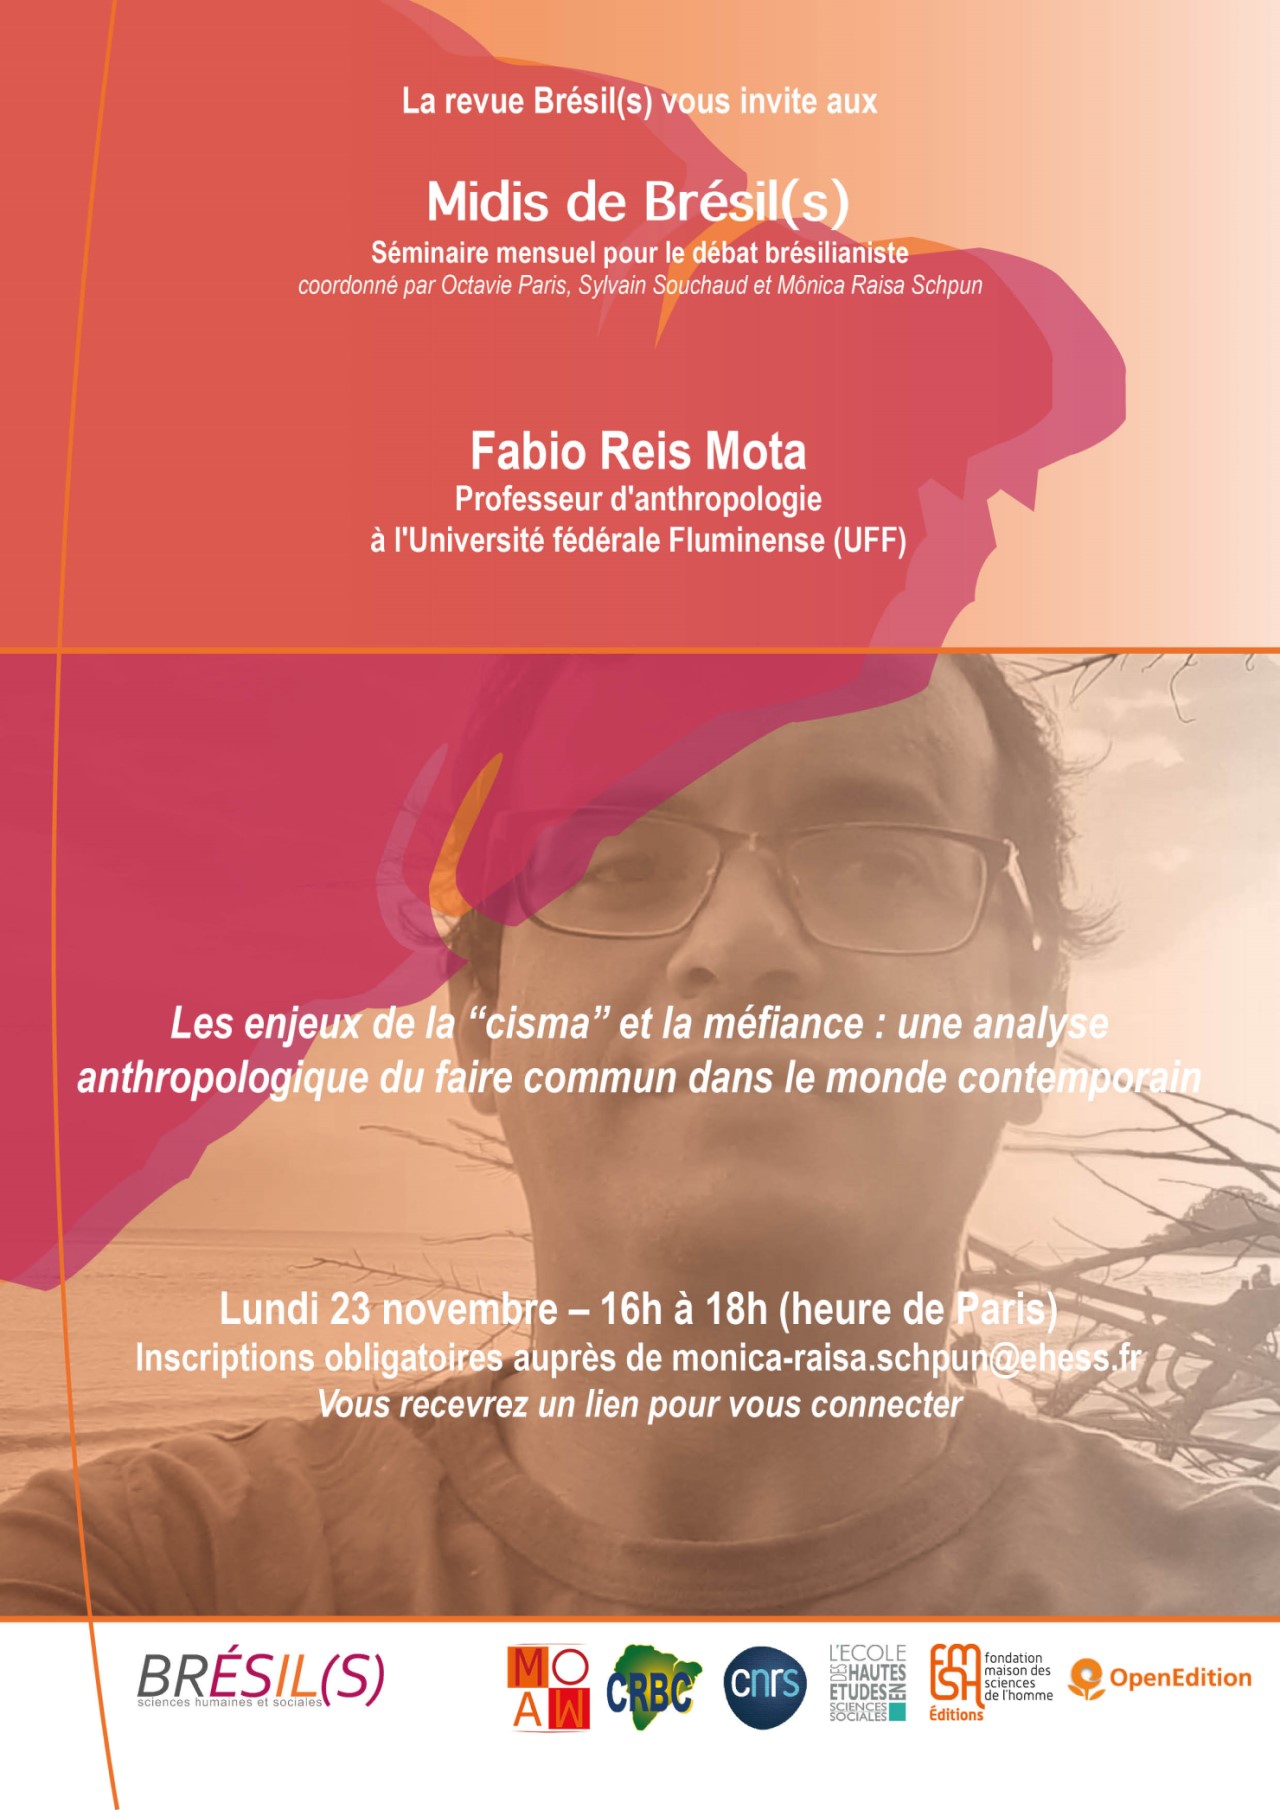 Les Midis de Brésil(s) - Fabio Reis Mota, professeur à l'Université fédérale Fluminense (UFF)